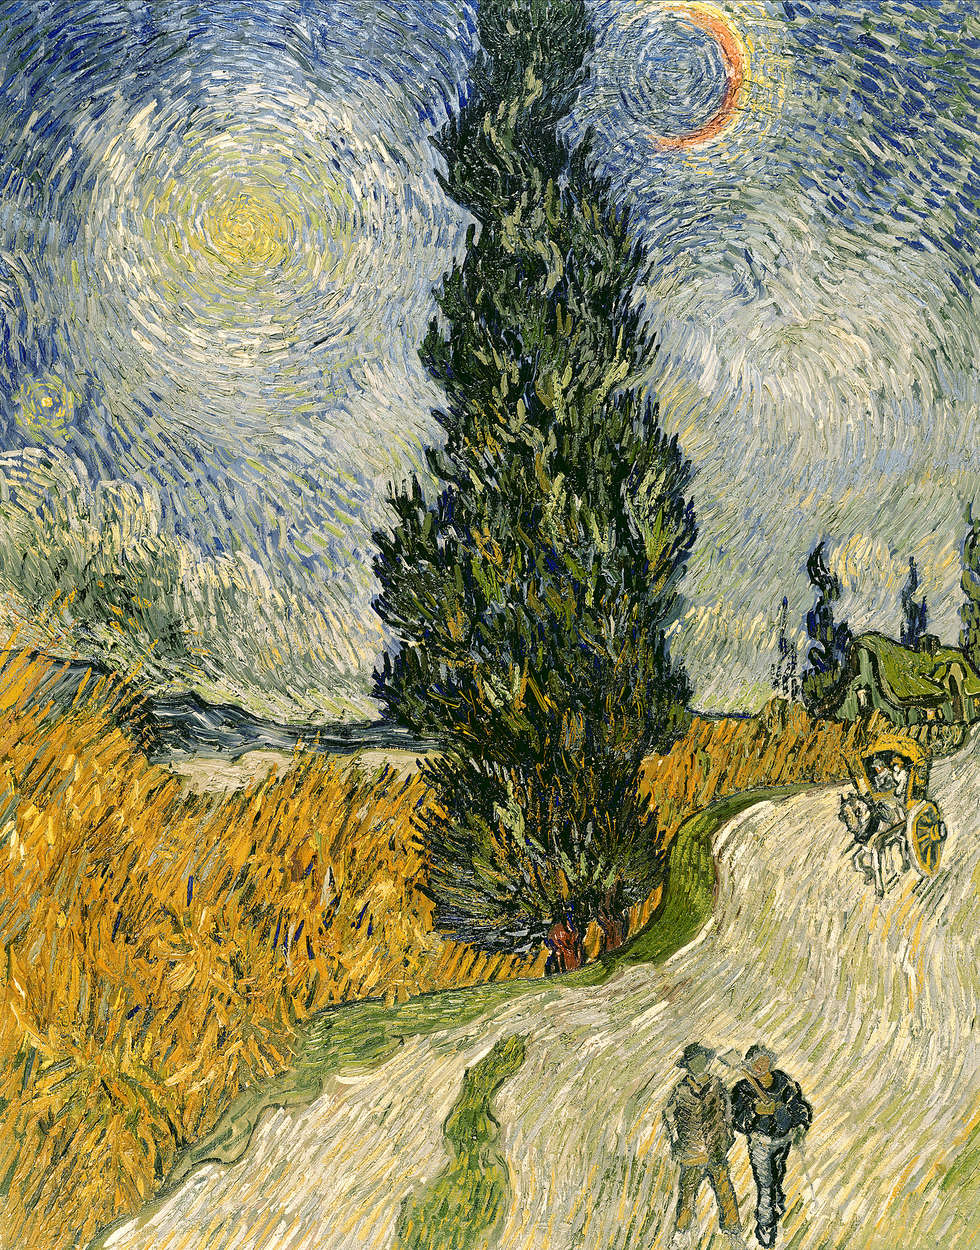             Weg met cipressen en ster" muurschildering van Vincent van Gogh
        